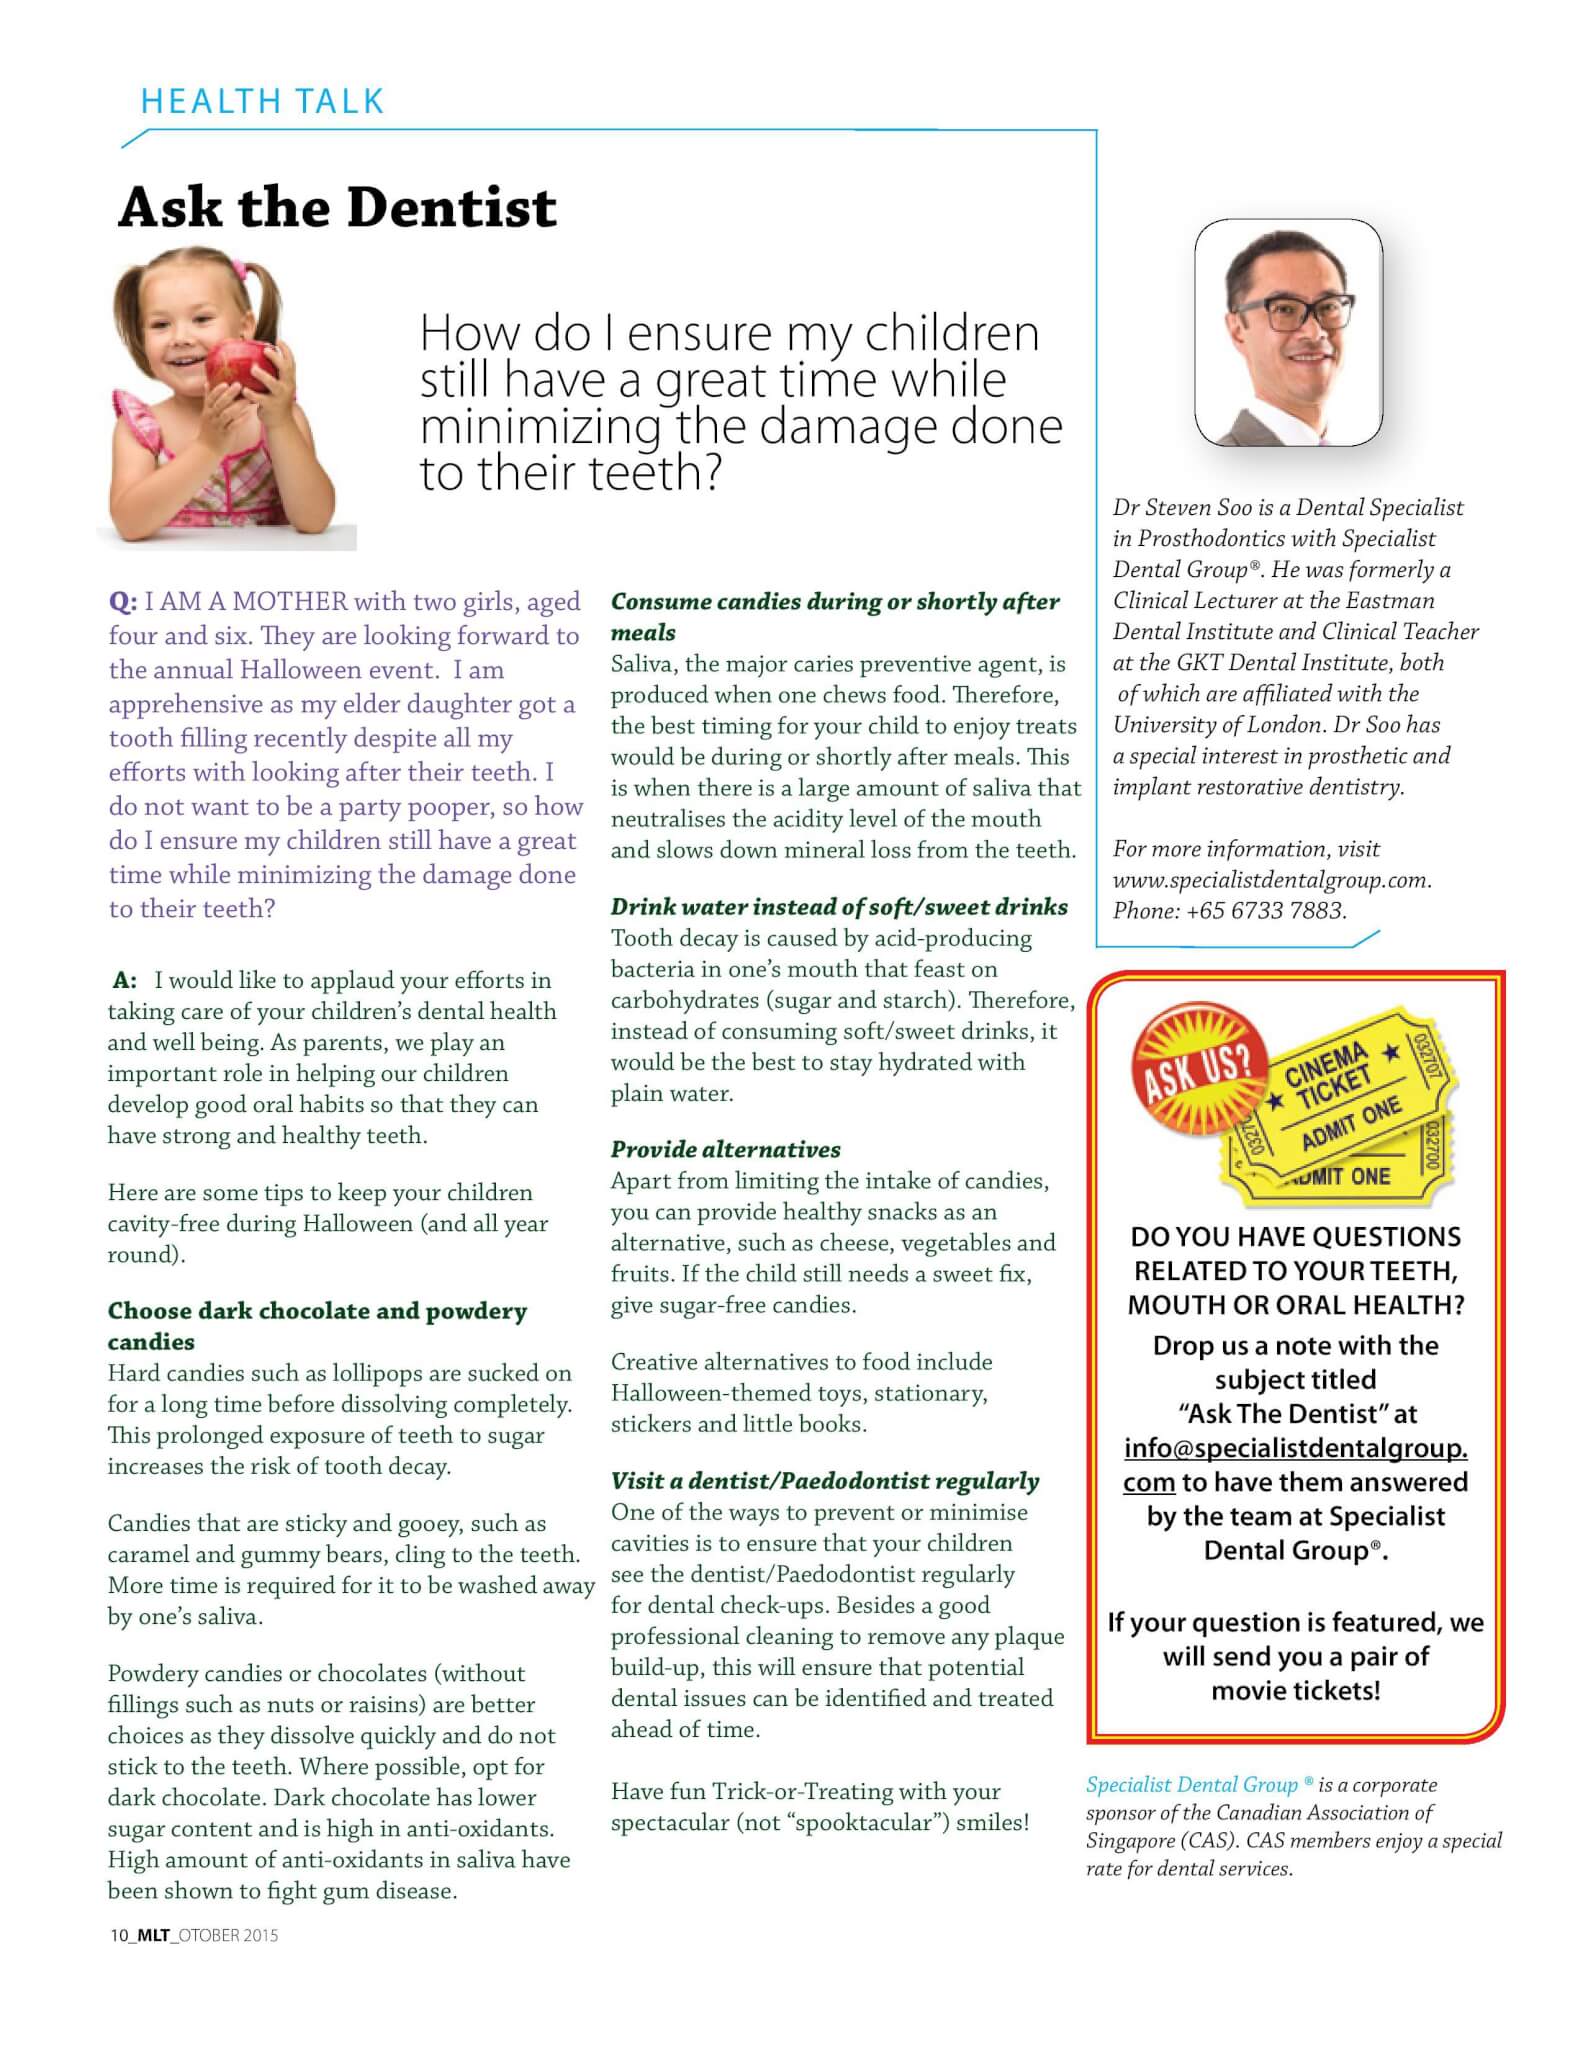 枫叶时报，2015 年 XNUMX 月：如何确保我的孩子仍然玩得开心，同时尽量减少对牙齿的伤害？